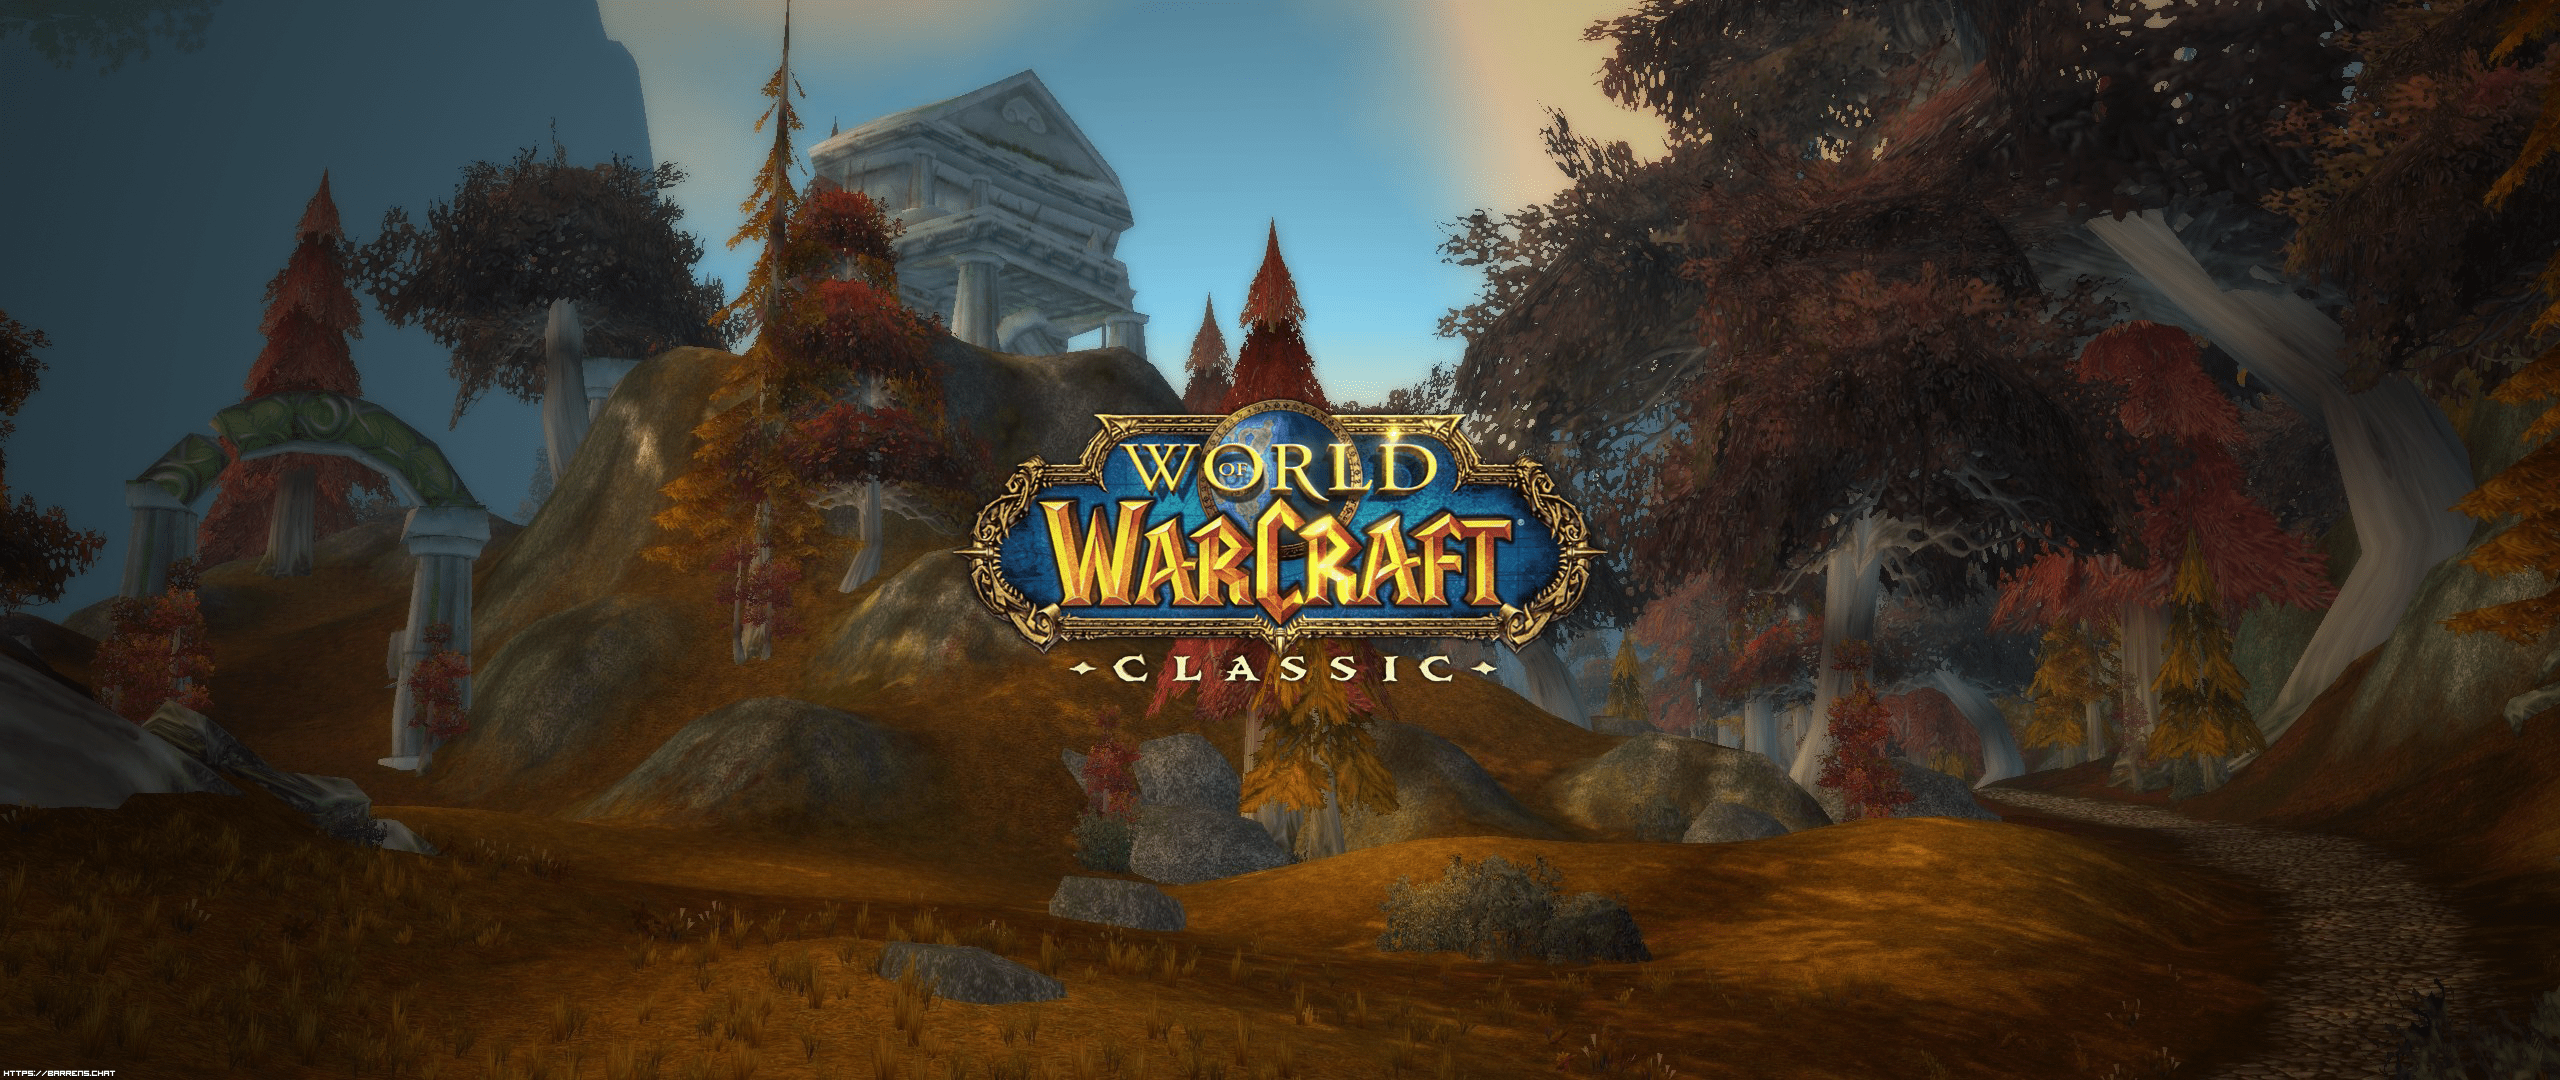 Скачать World of Warcraft 1.12.1. на shvedplay.ru